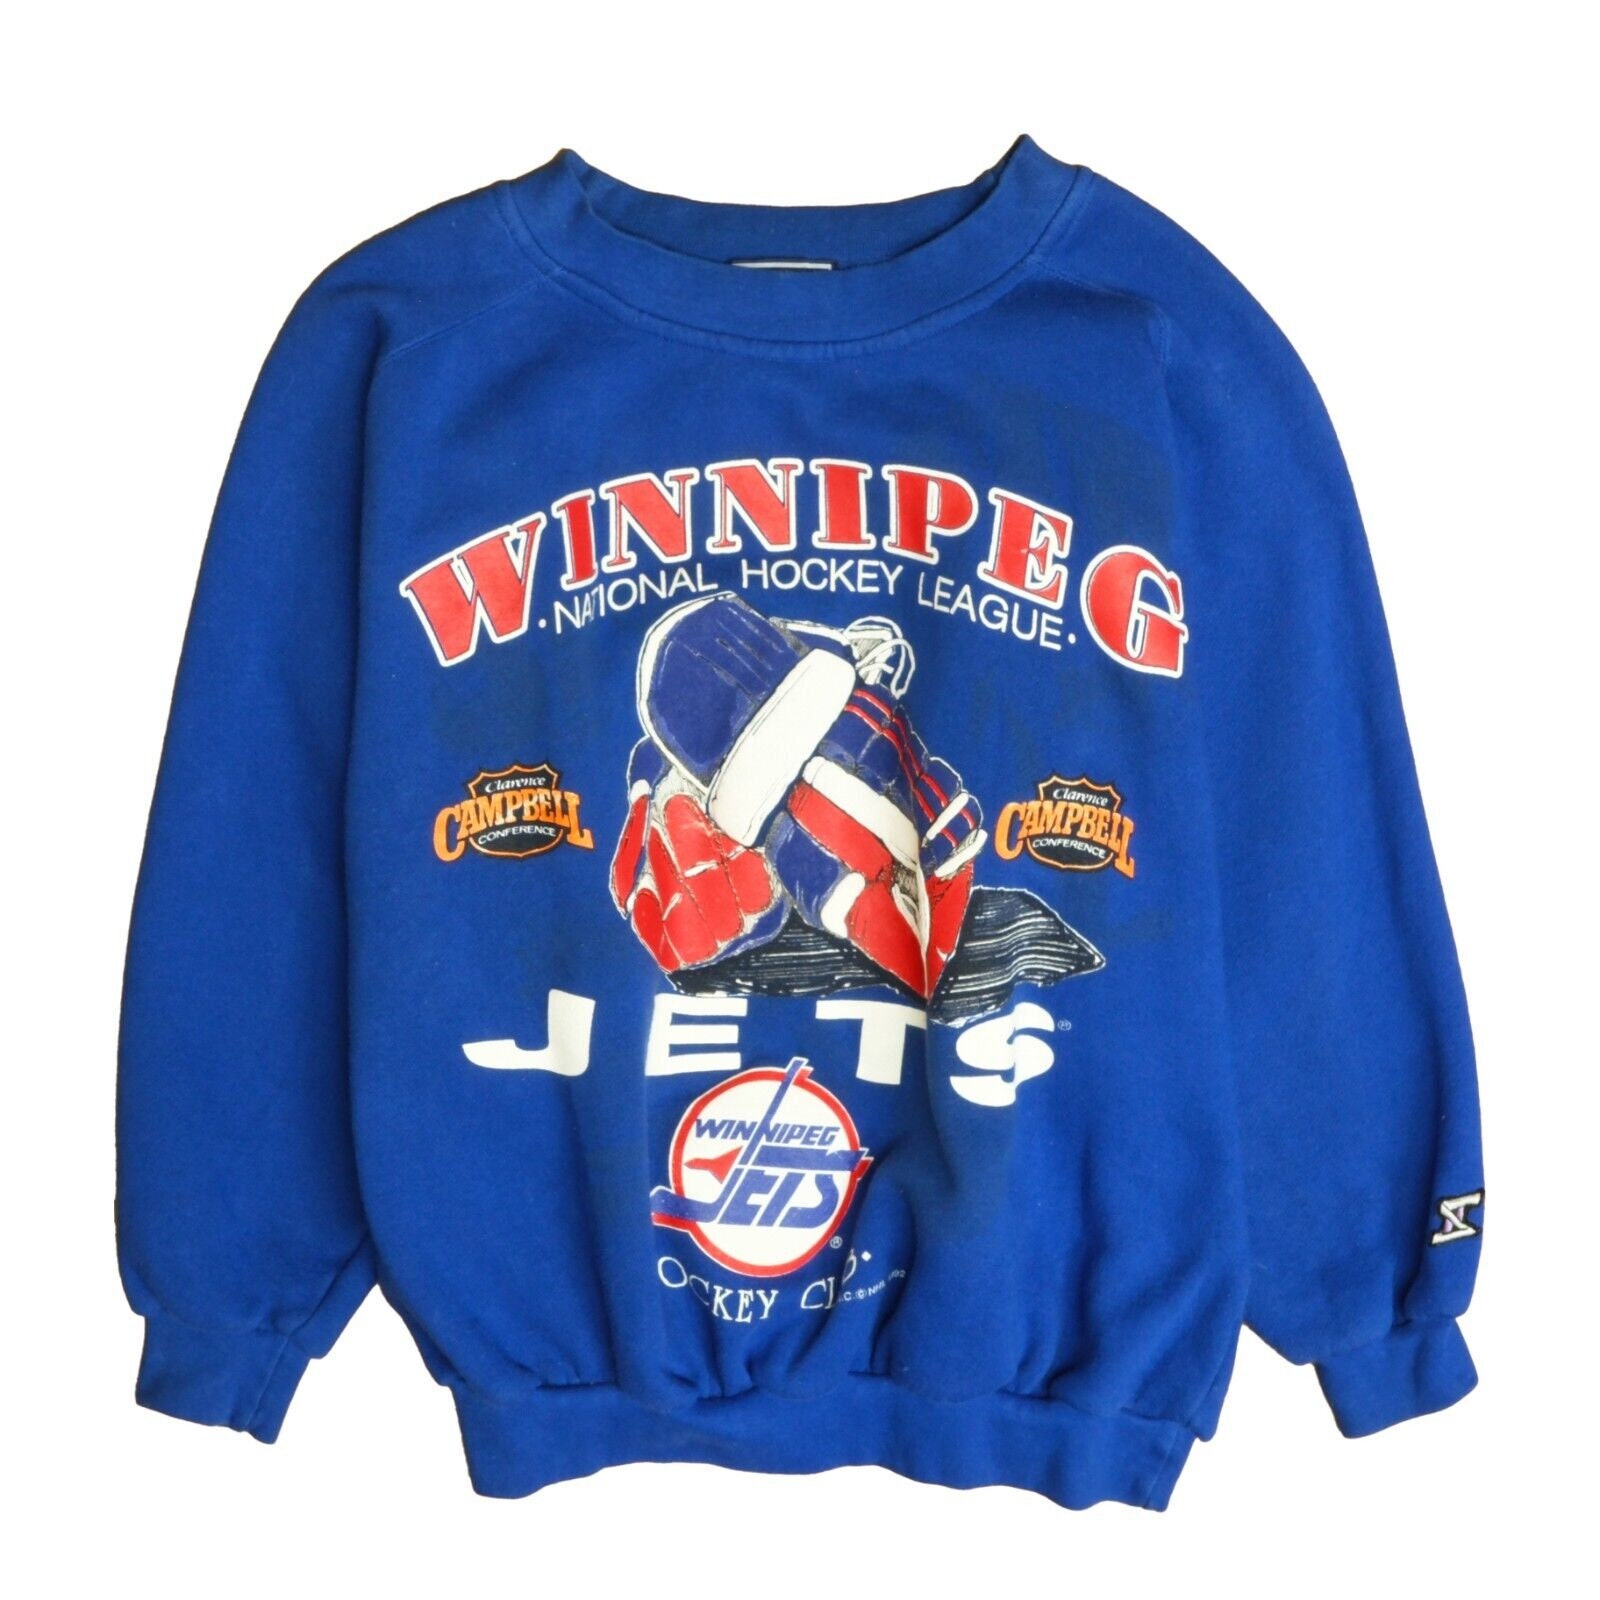 Winnipeg Jets vintage apparel